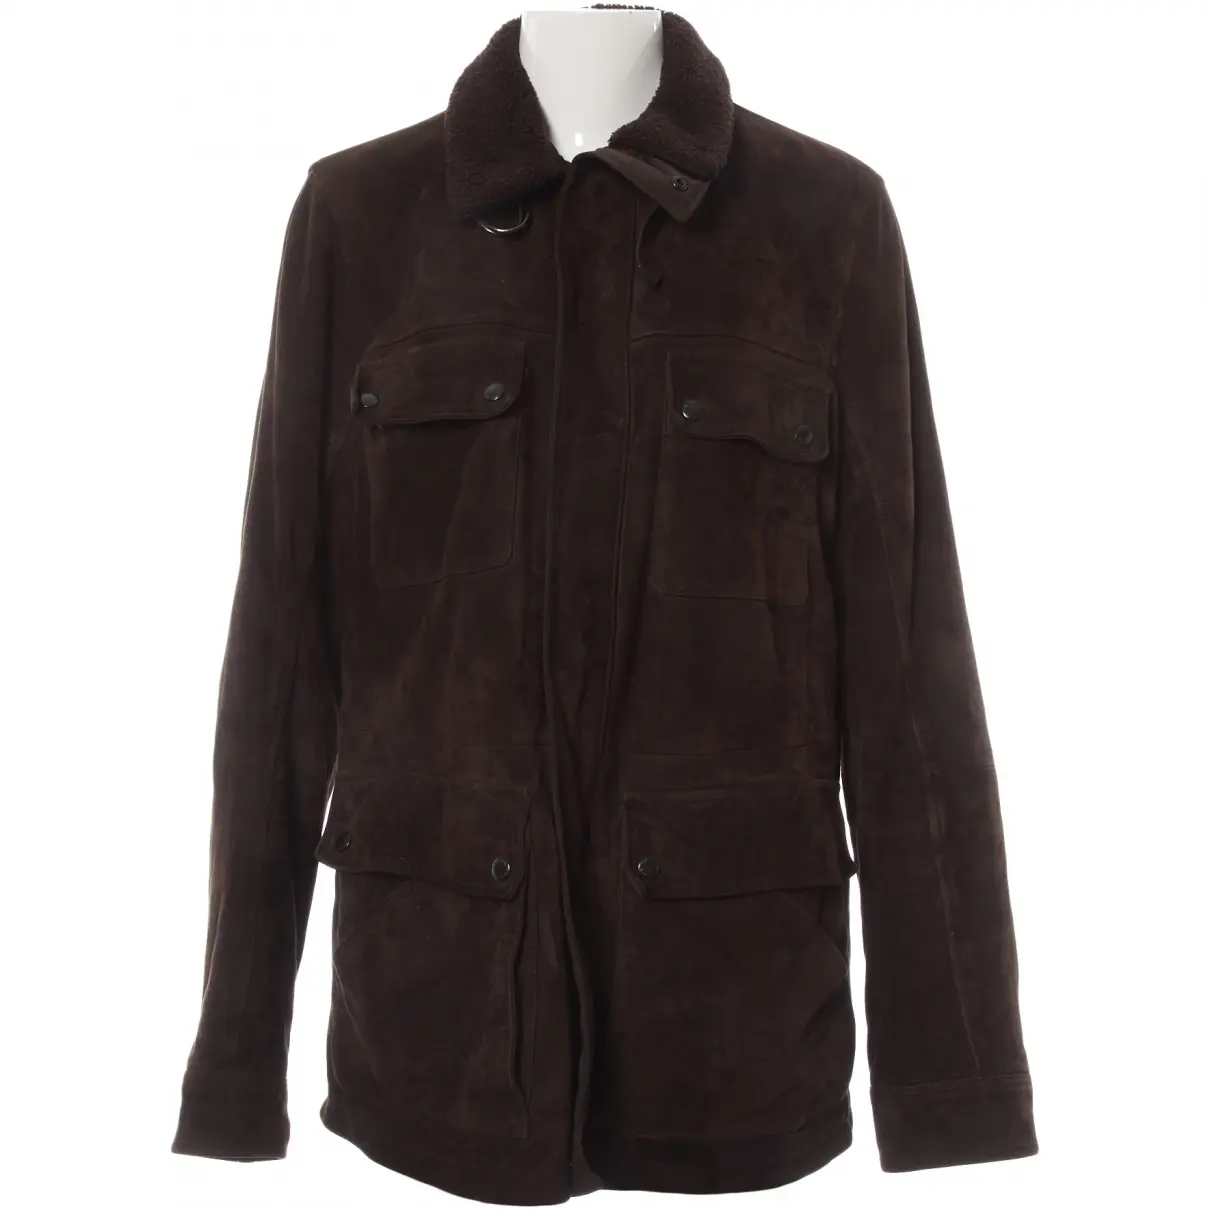 Leather jacket Prada - Vintage